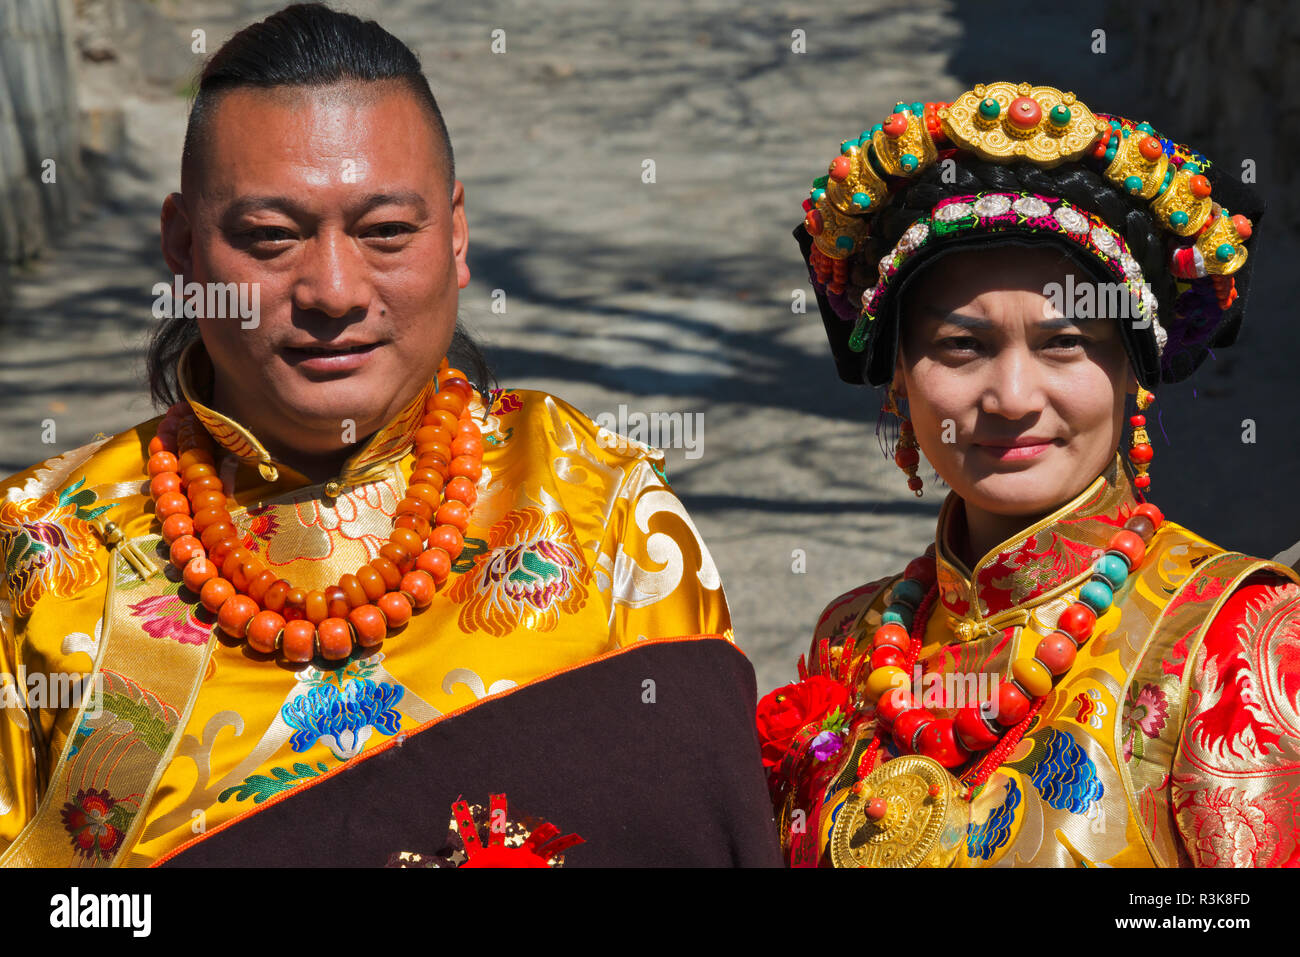 Abbigliamento Tibetano Immagini E Fotos Stock Alamy